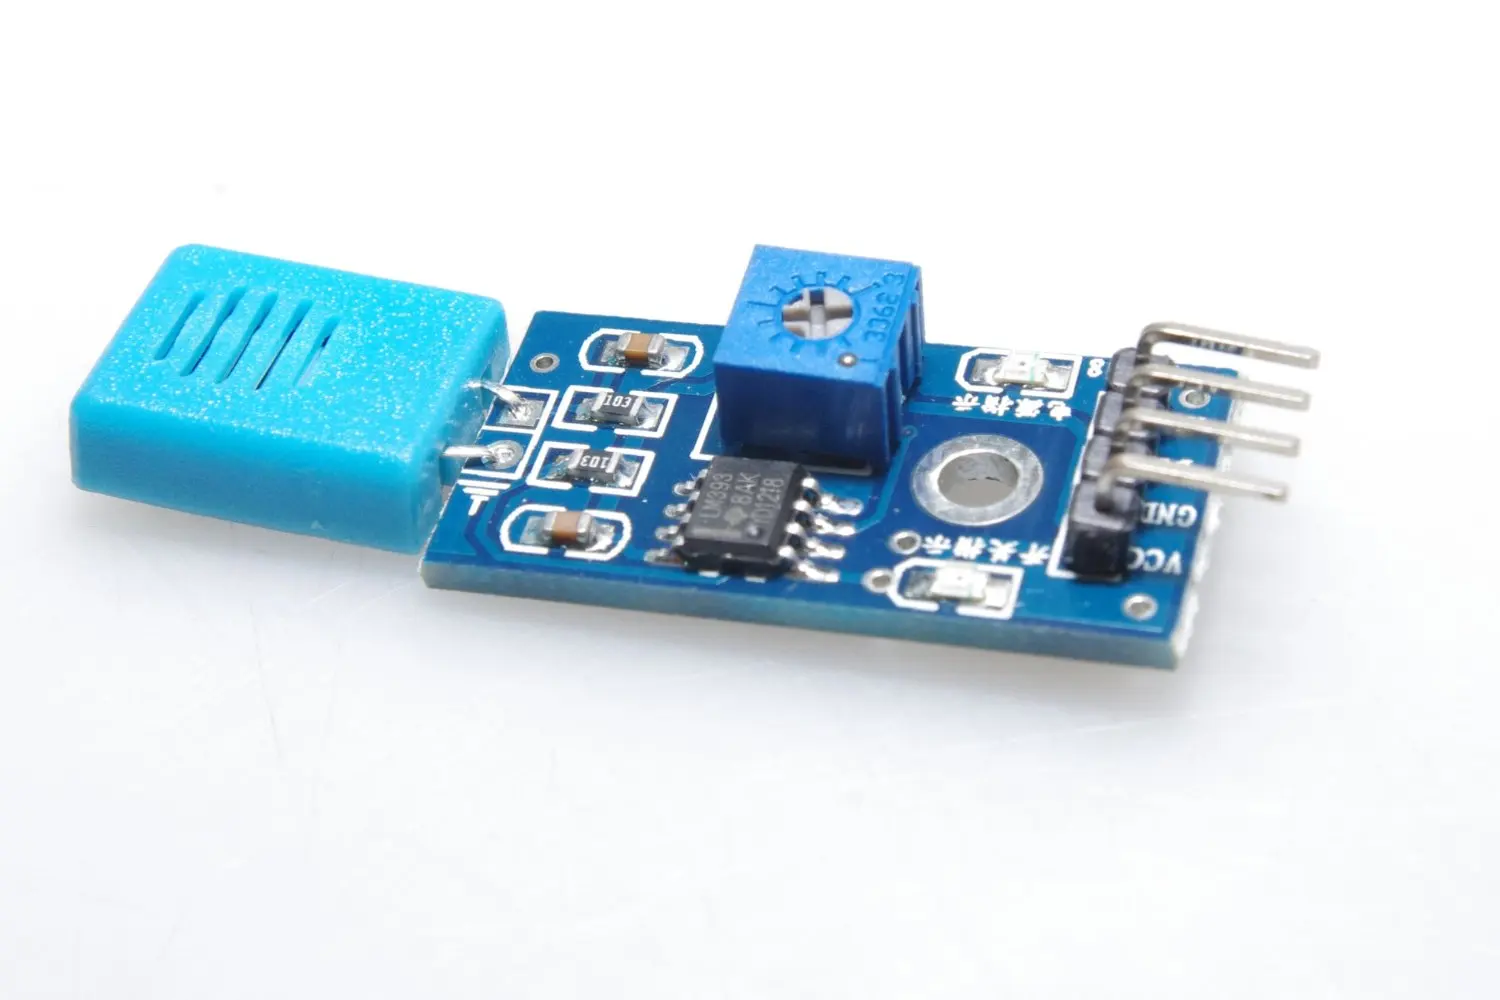 HiLetgo 2pcs HR202 Humidity Sensor Switch Relay Module Control Board DC 5V 1-Channal